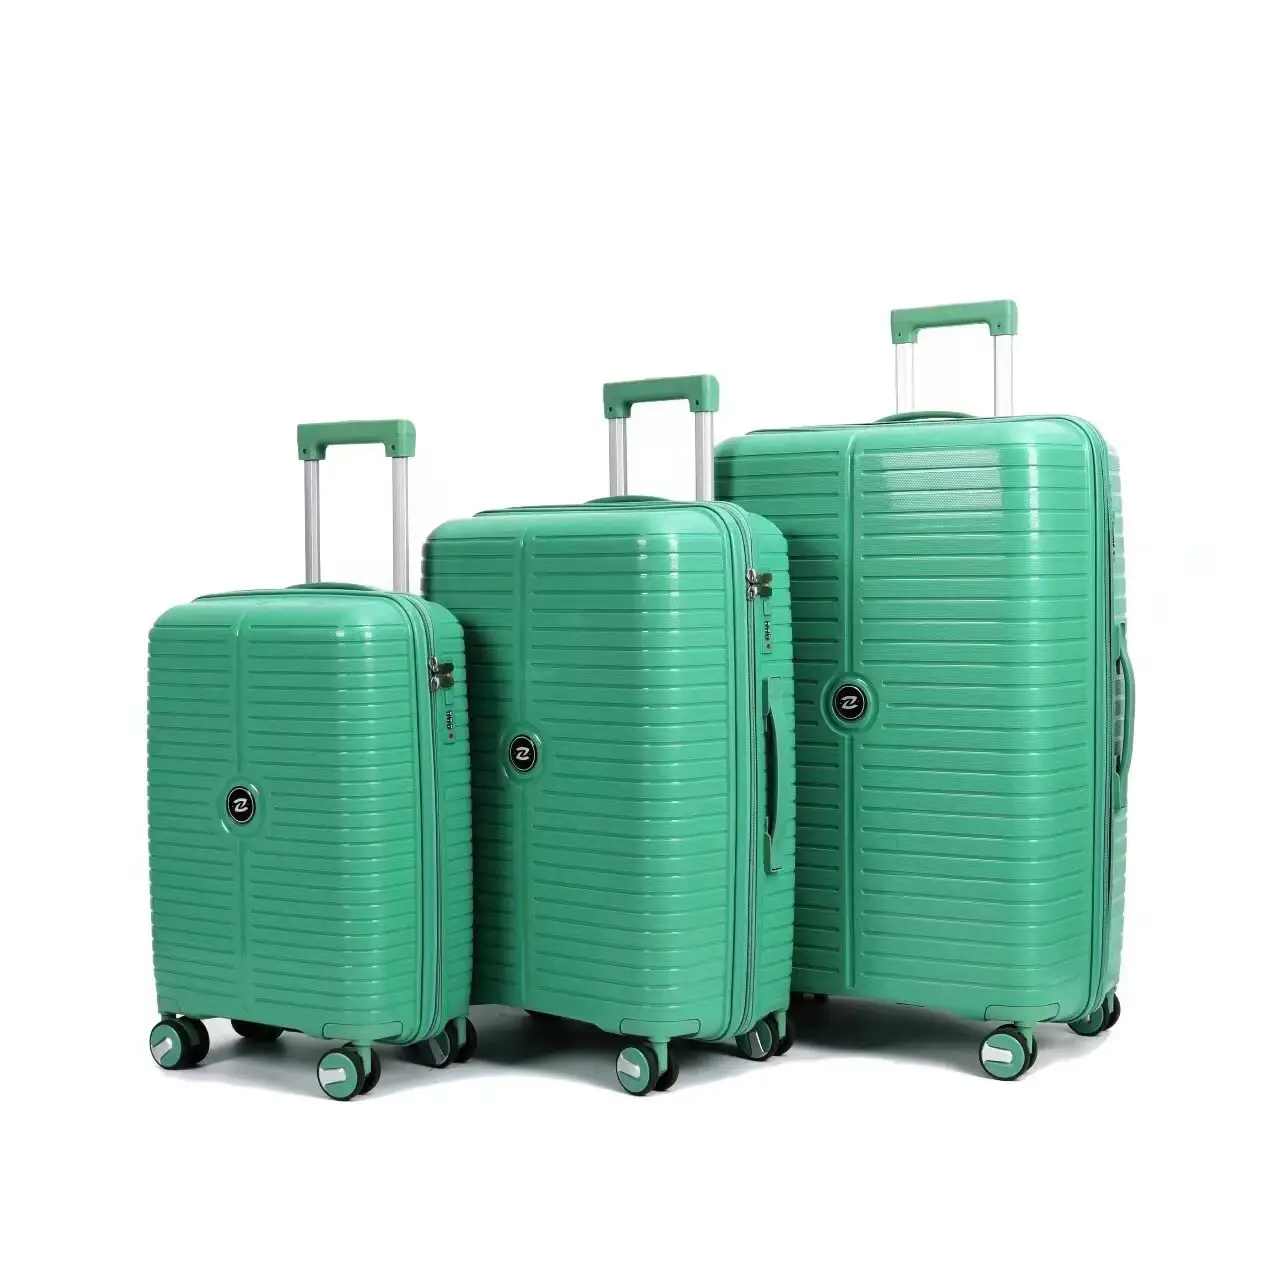 Горячая распродажа высокое качество PP багаж 3 шт. один комплект многоцветные дорожные сумки